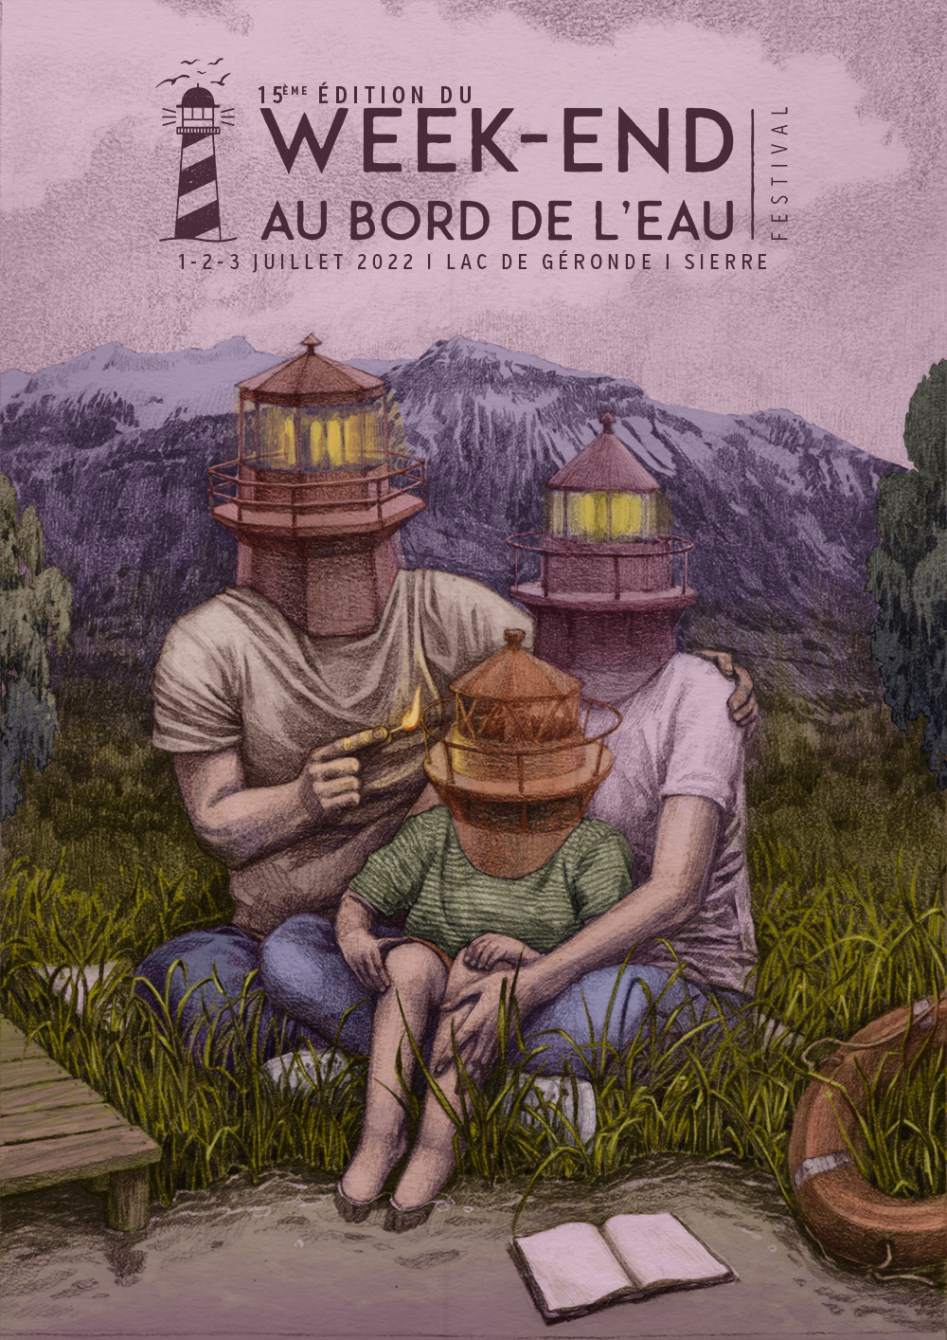 Festival Week-end au Bord de L'eau - 15th Edition - フライヤー表